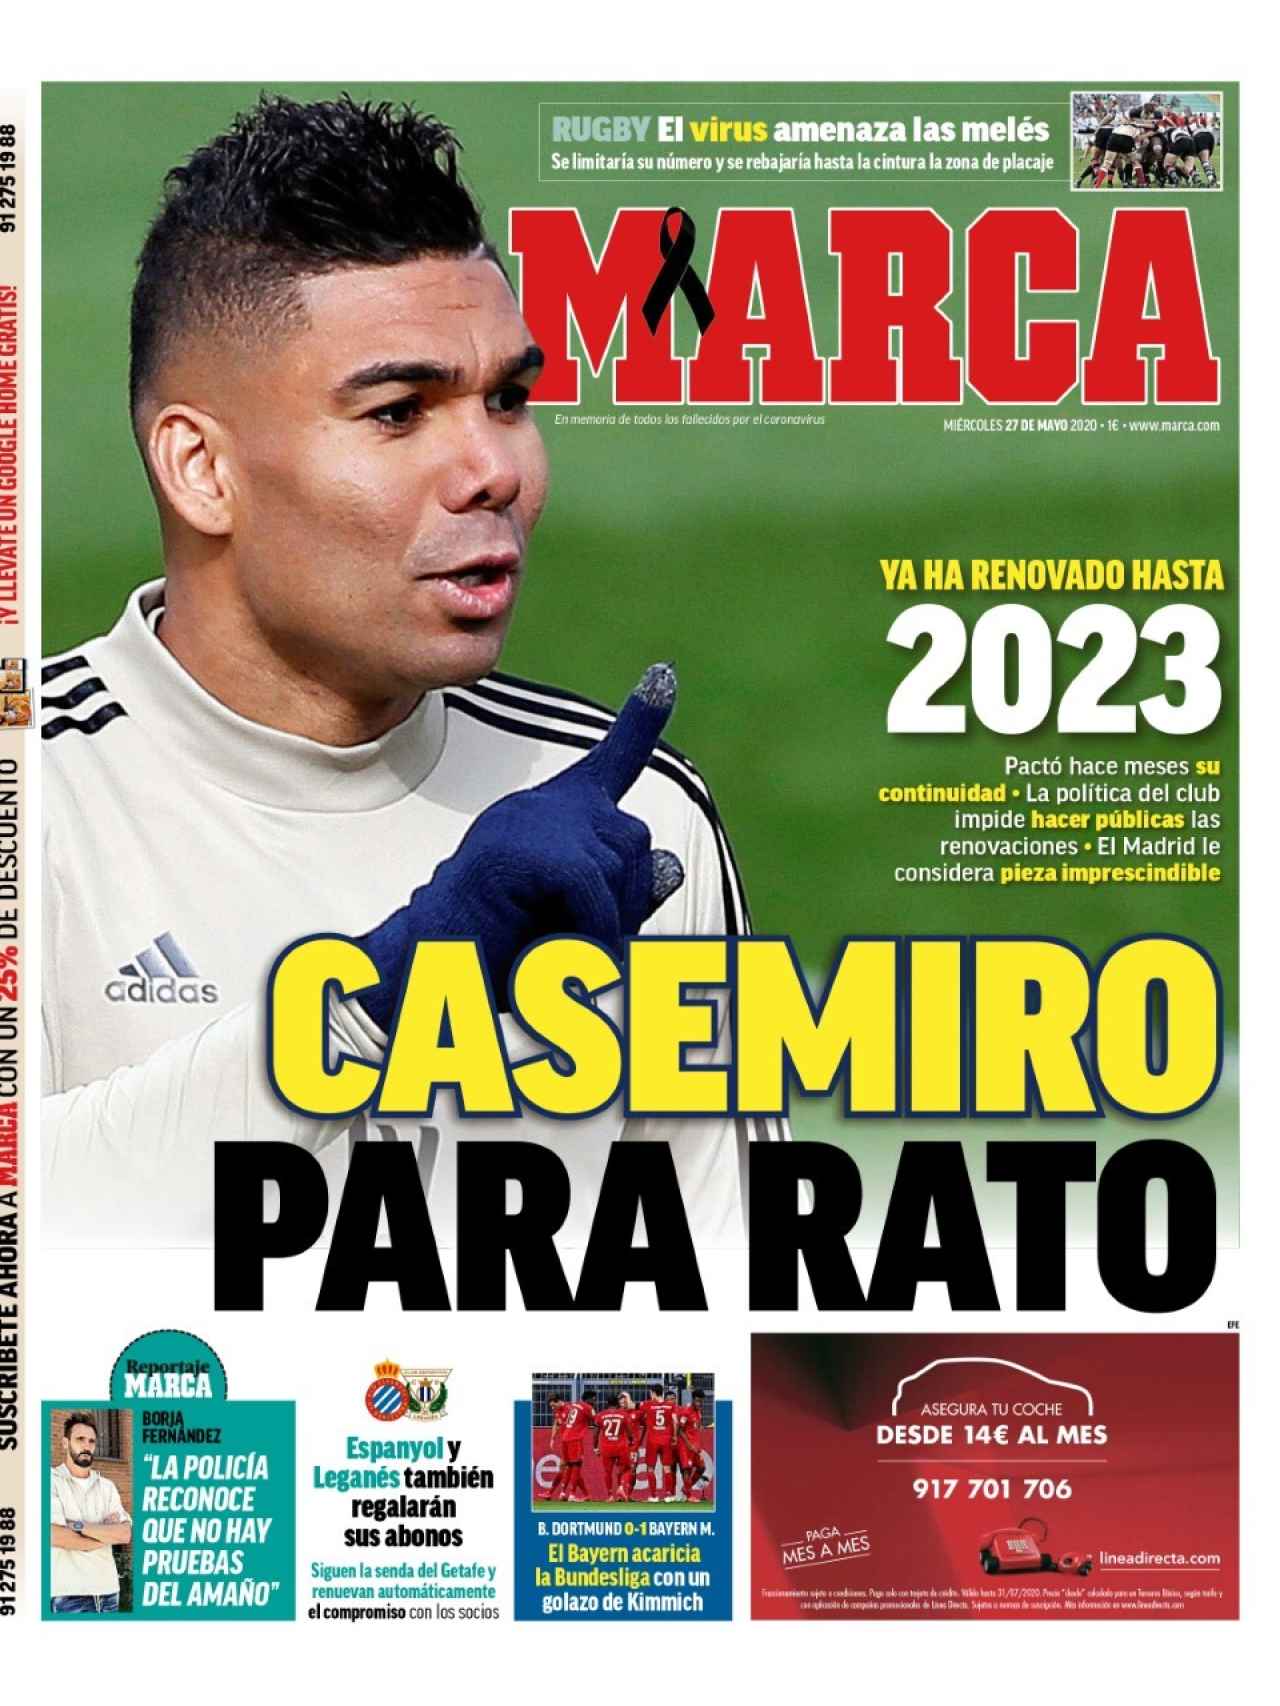 La portada del diario MARCA (27/05/2020)